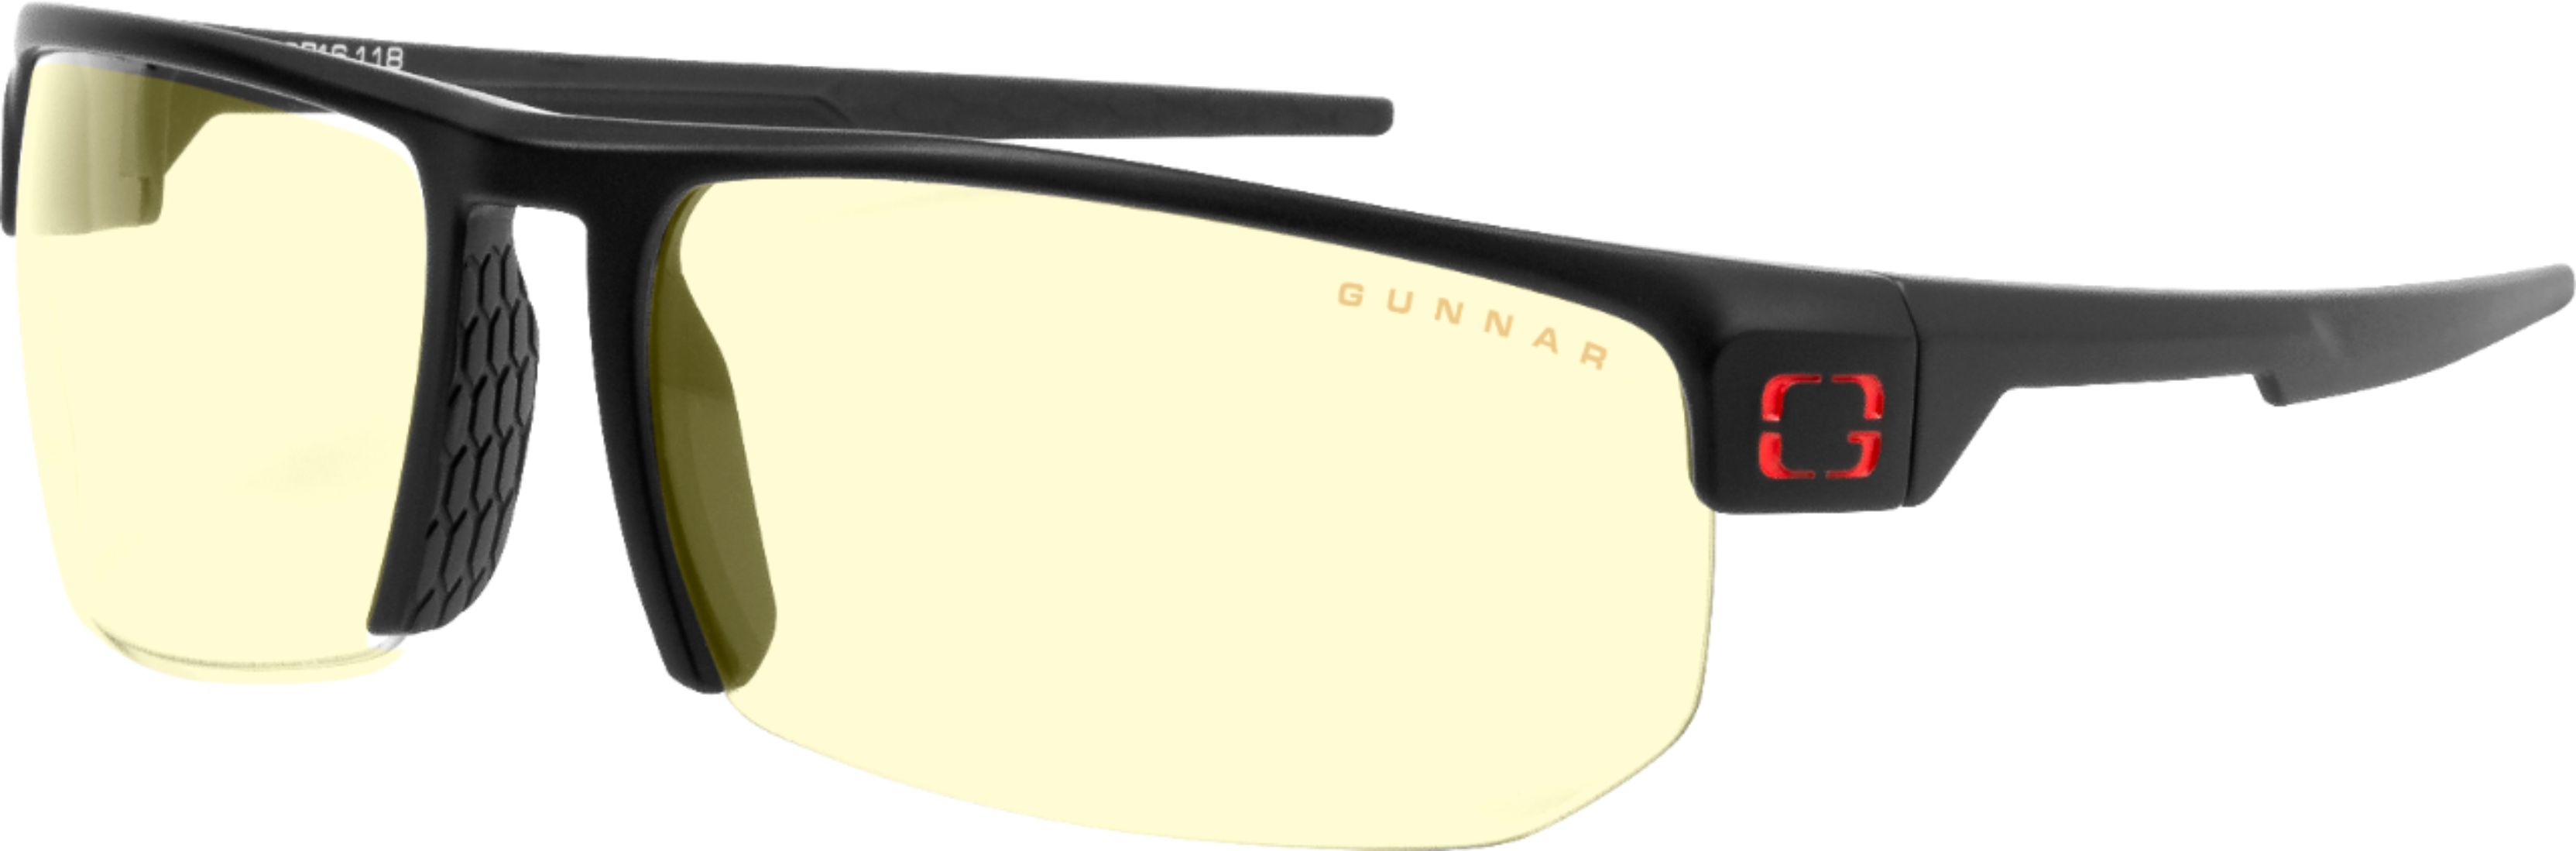 Gunnar - Torpedo Gaming Eyewear - Onyx